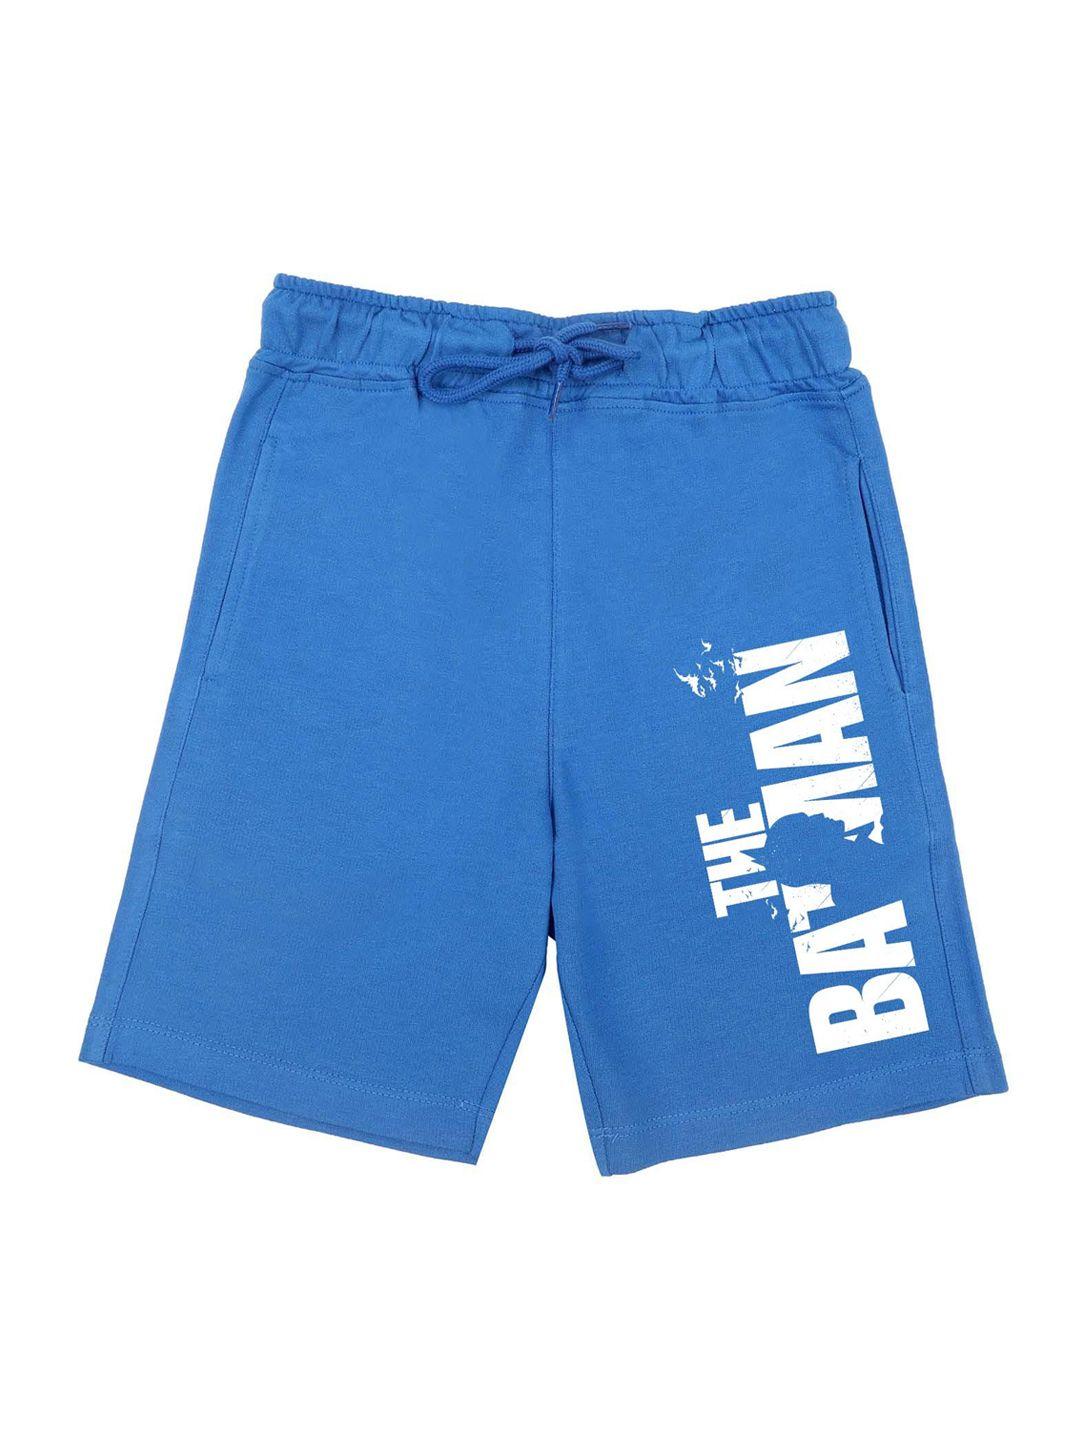 dc-by-wear-your-mind-boys-blue-batman-shorts